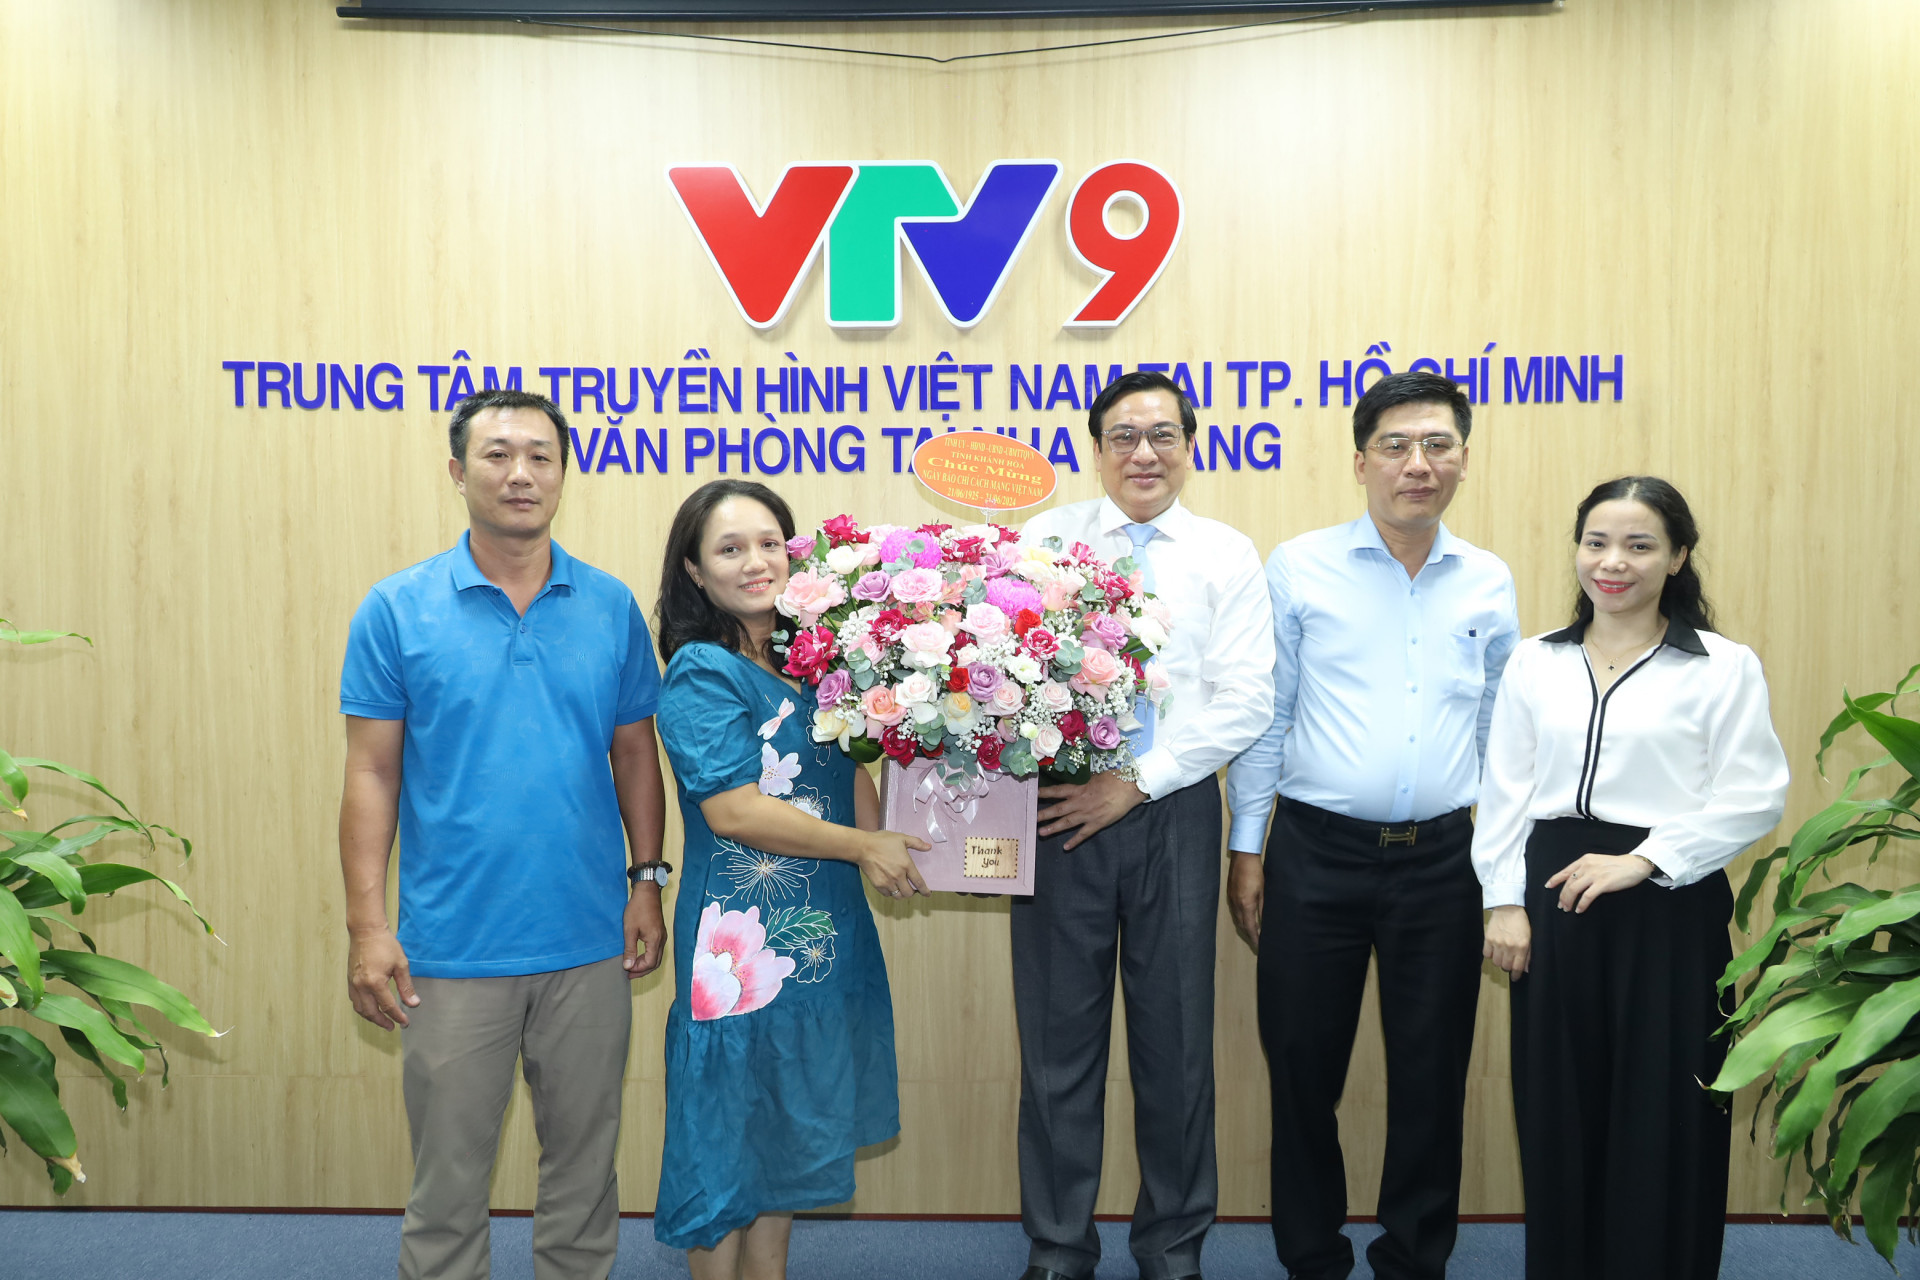 Đồng chí Lê Hữu Thọ tặng hoa chúc mừng lãnh đạo Văn phòng tại Nha Trang - Trung tâm Truyền hình Việt Nam tại TP. Hồ Chí Minh nhân Ngày Báo chí Cách mạng Việt Nam.